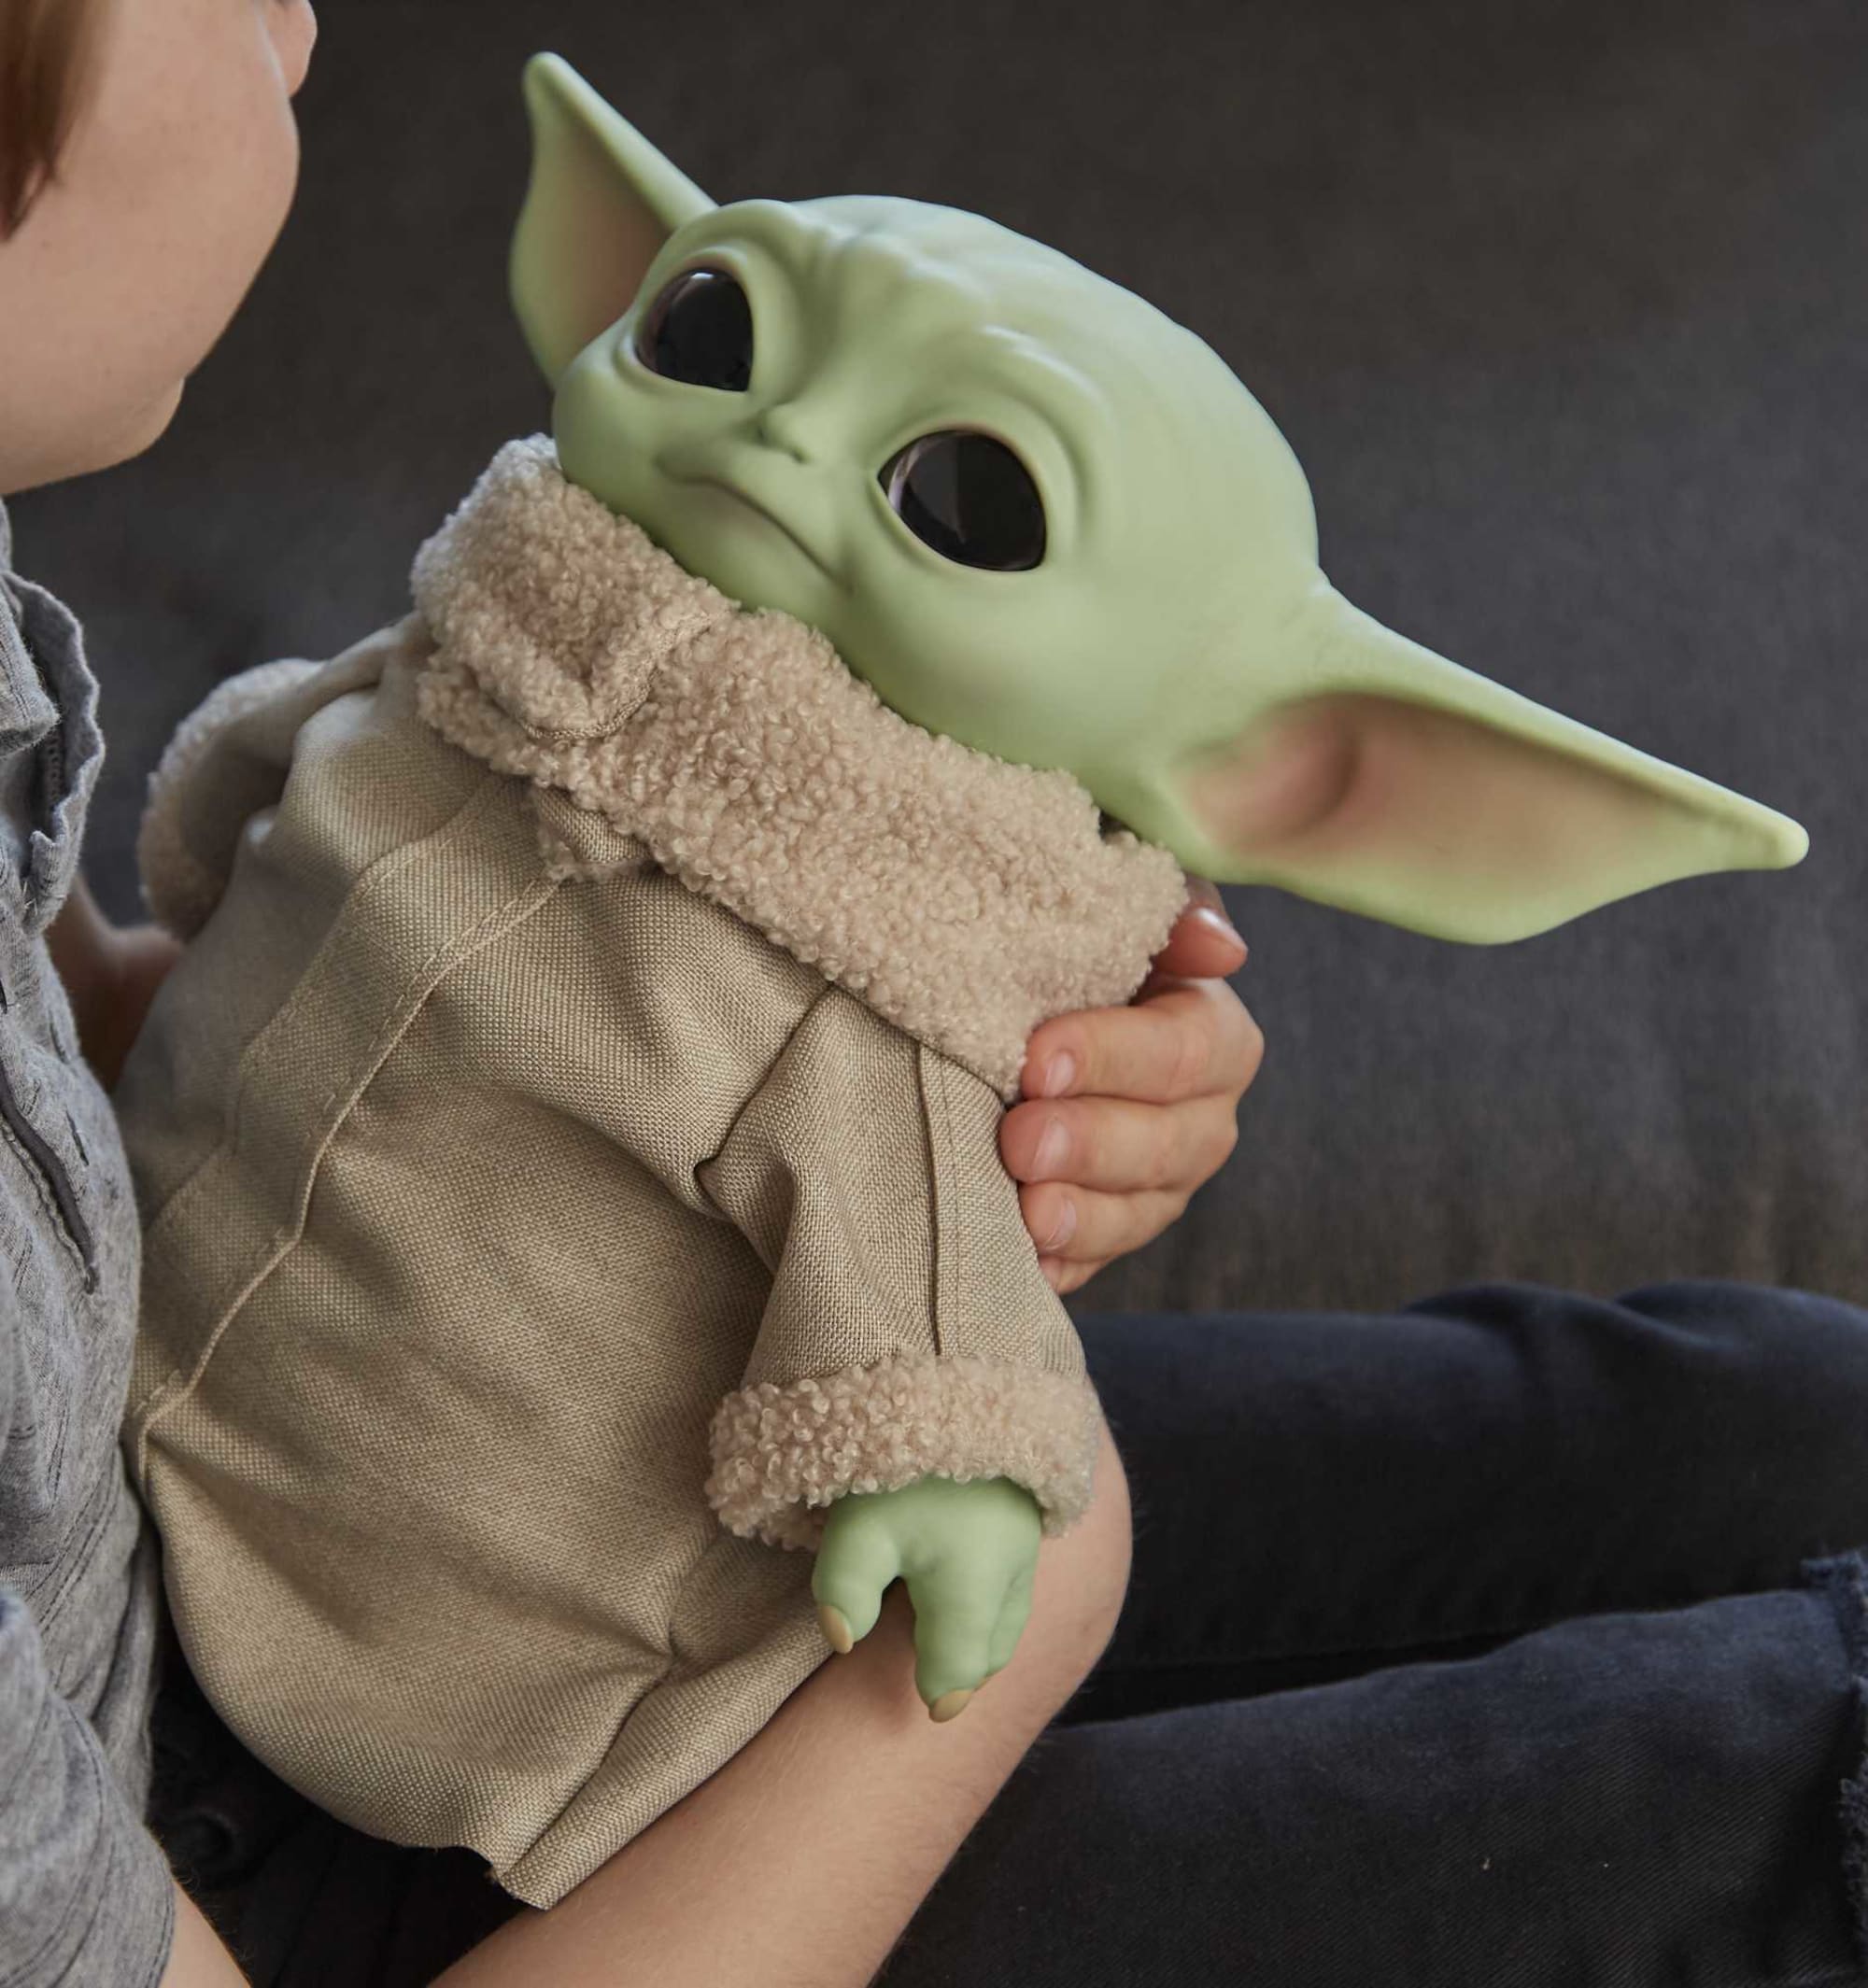 Star Wars „The Child“ Plüschfigur, ca. 28 cm große Kuschelfigur der Yoda  Spezies aus The Mandalorian